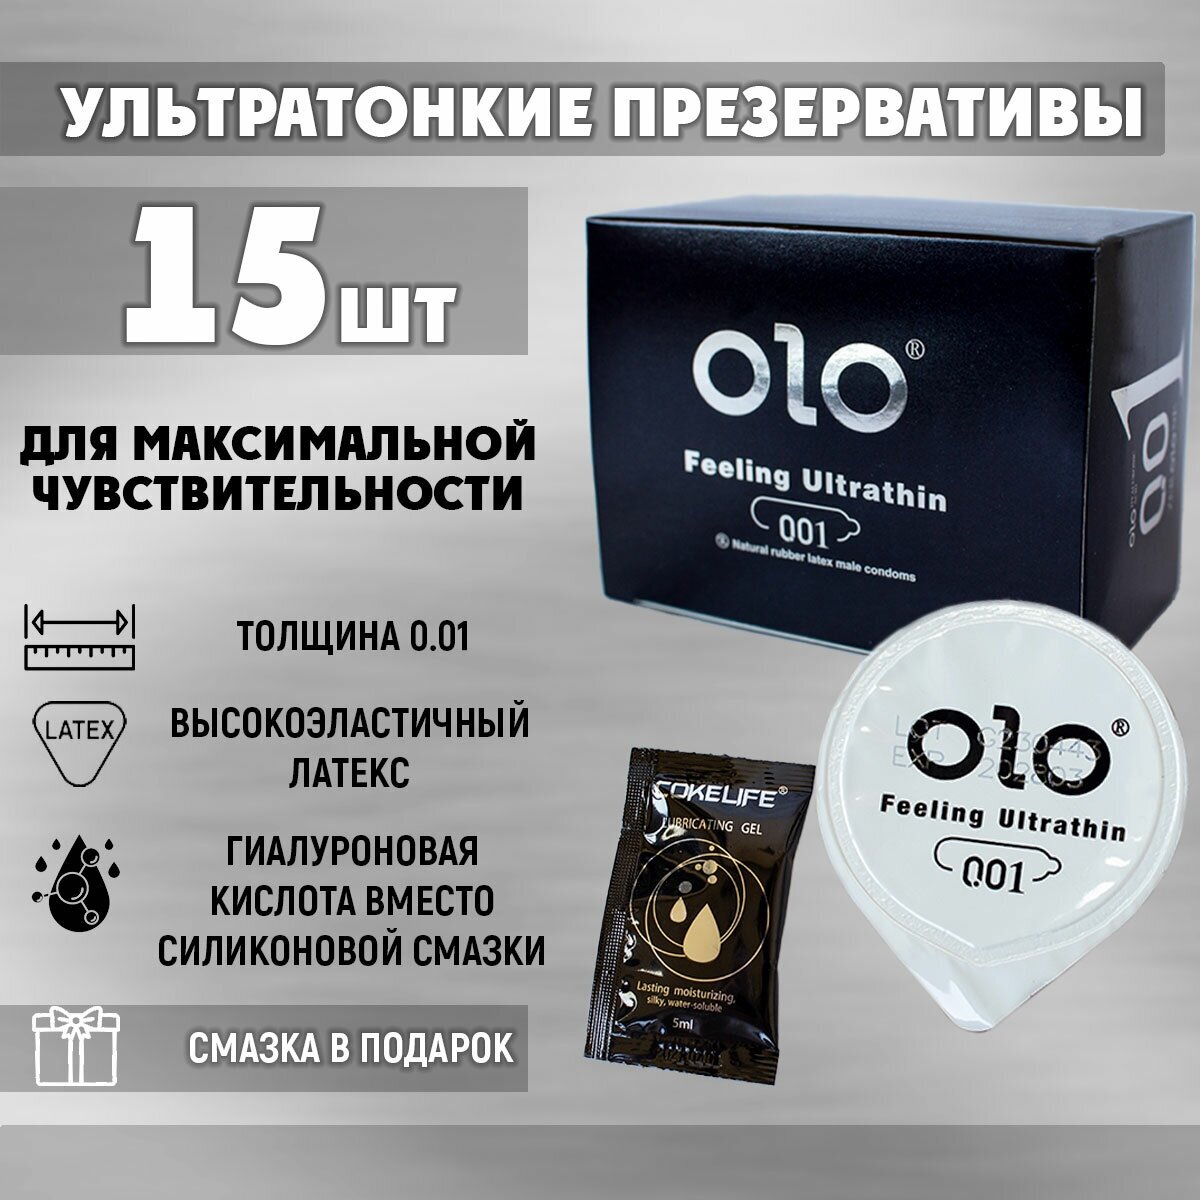 Ультратонкие презервативы OLO Feeling Ultrathin 001 с гиалуроновой кислотой 0.01 мм 15шт + смазка